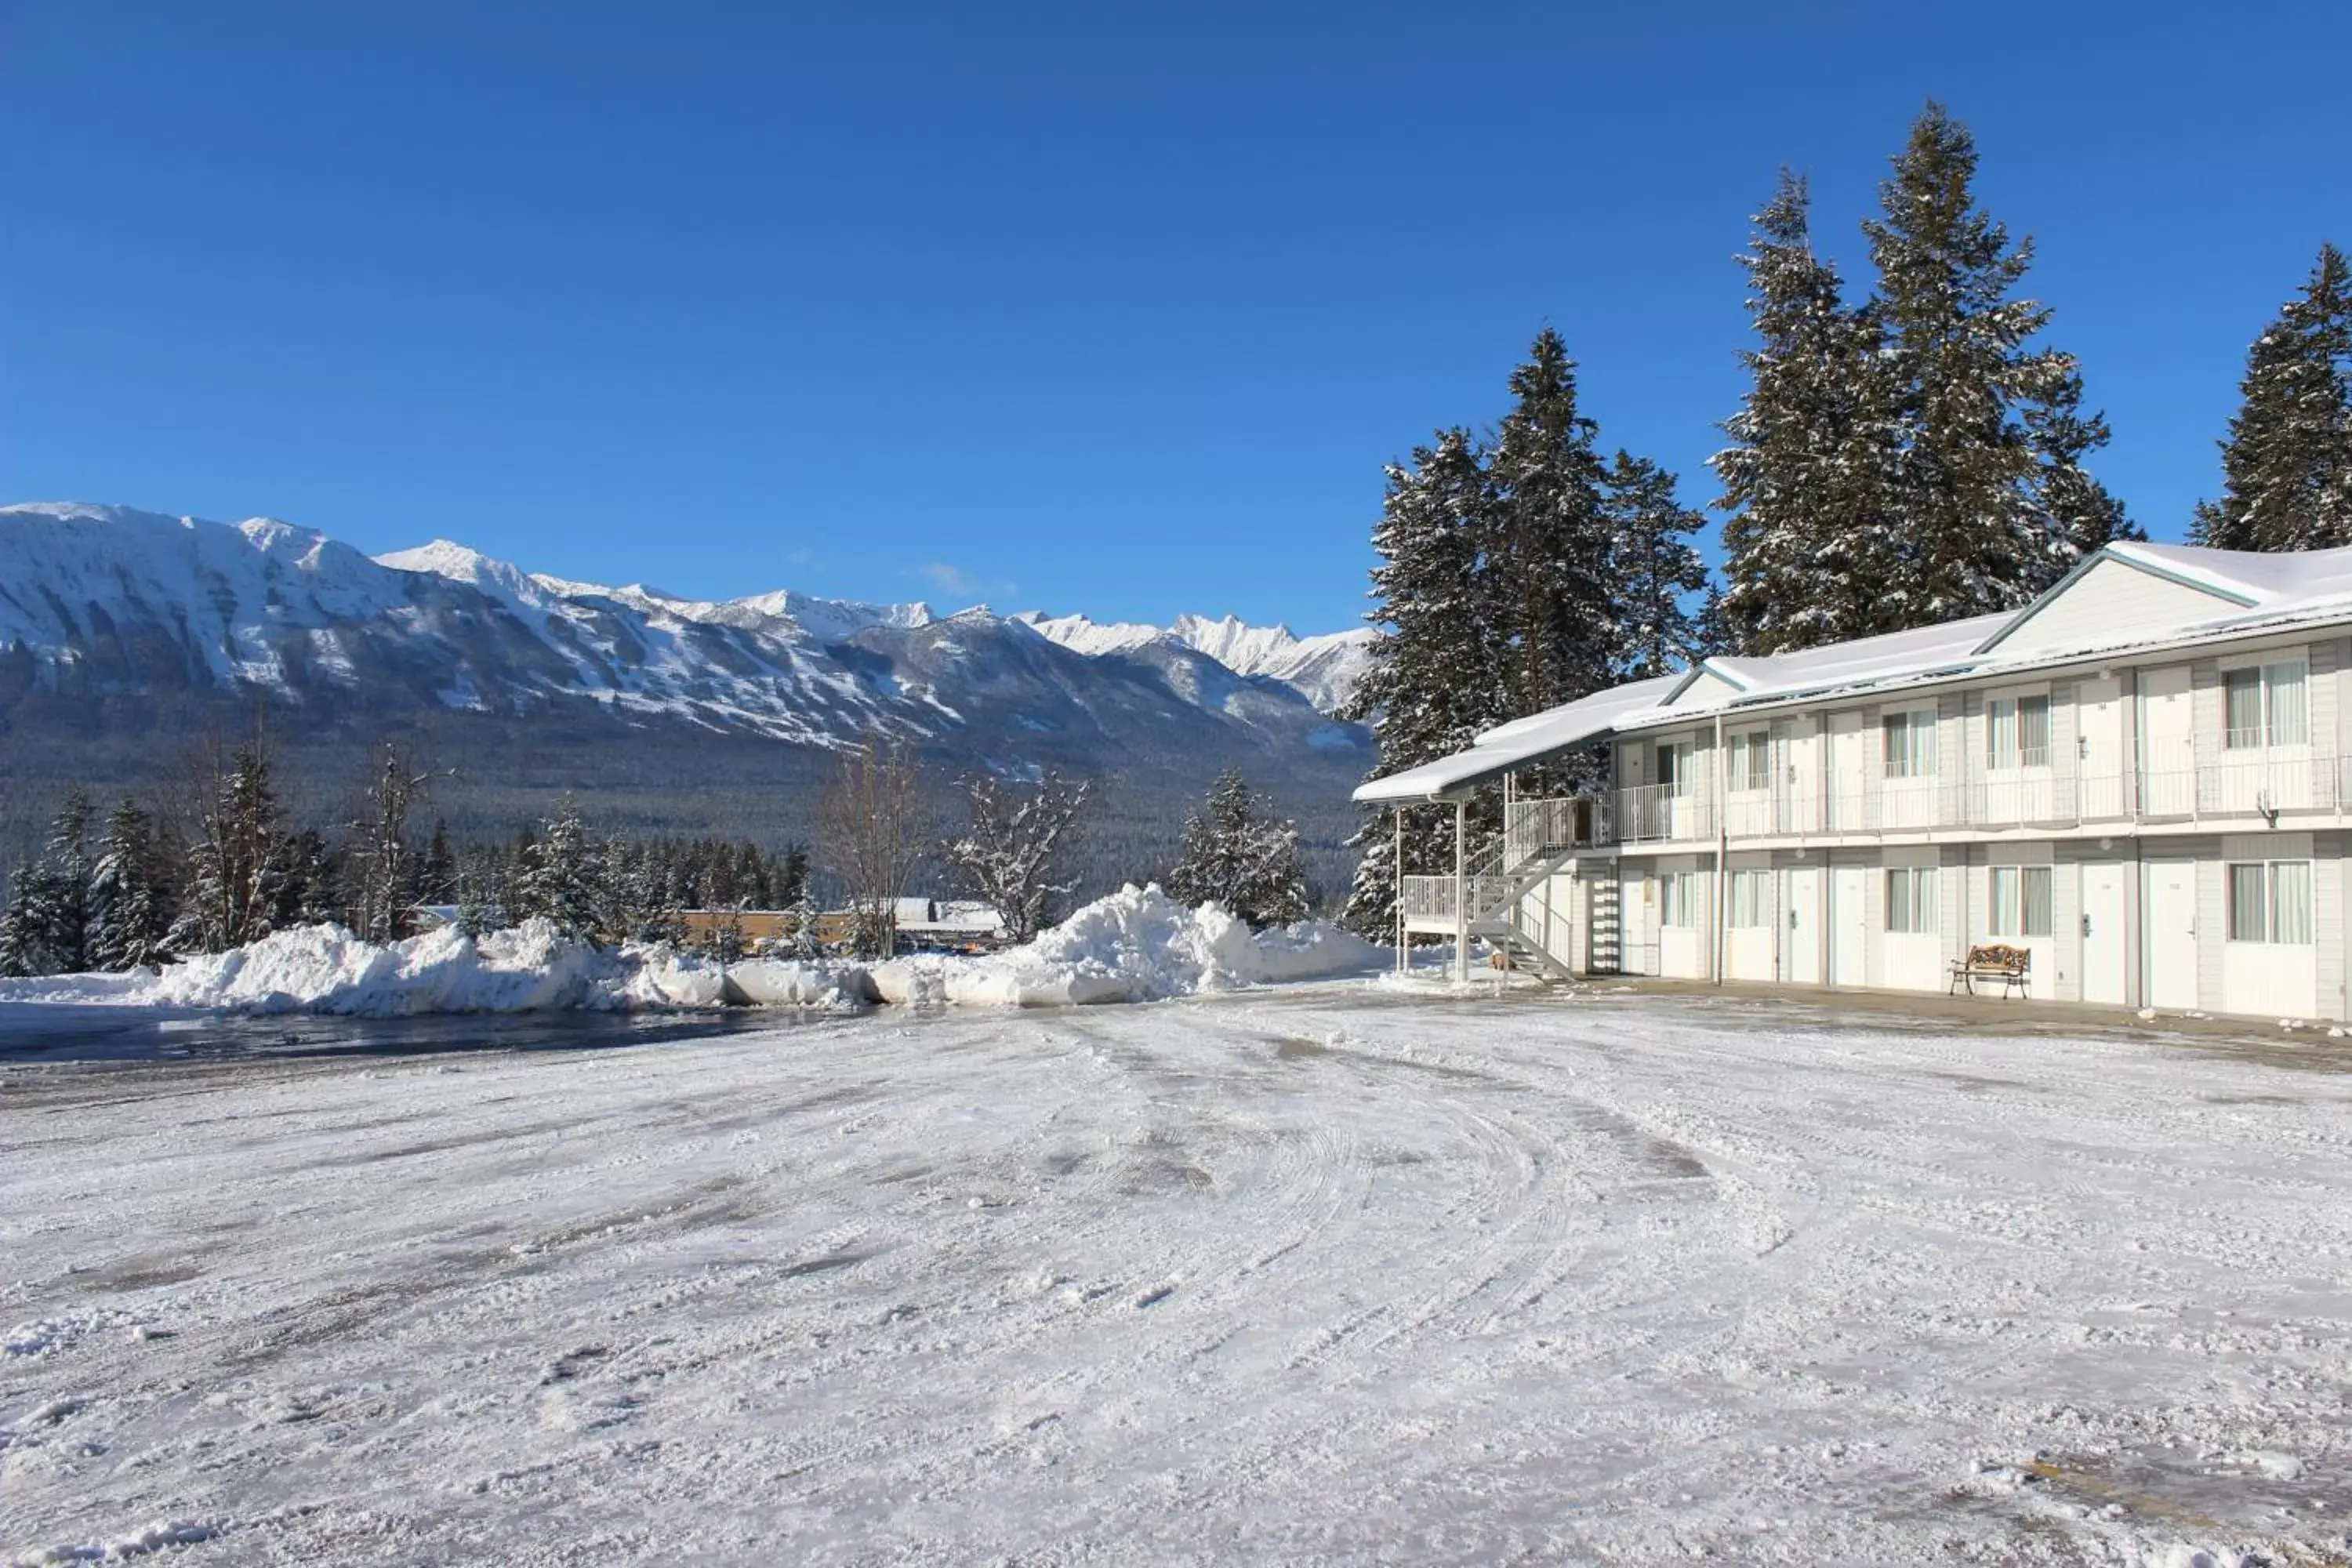 Day, Winter in Golden Village Lodge